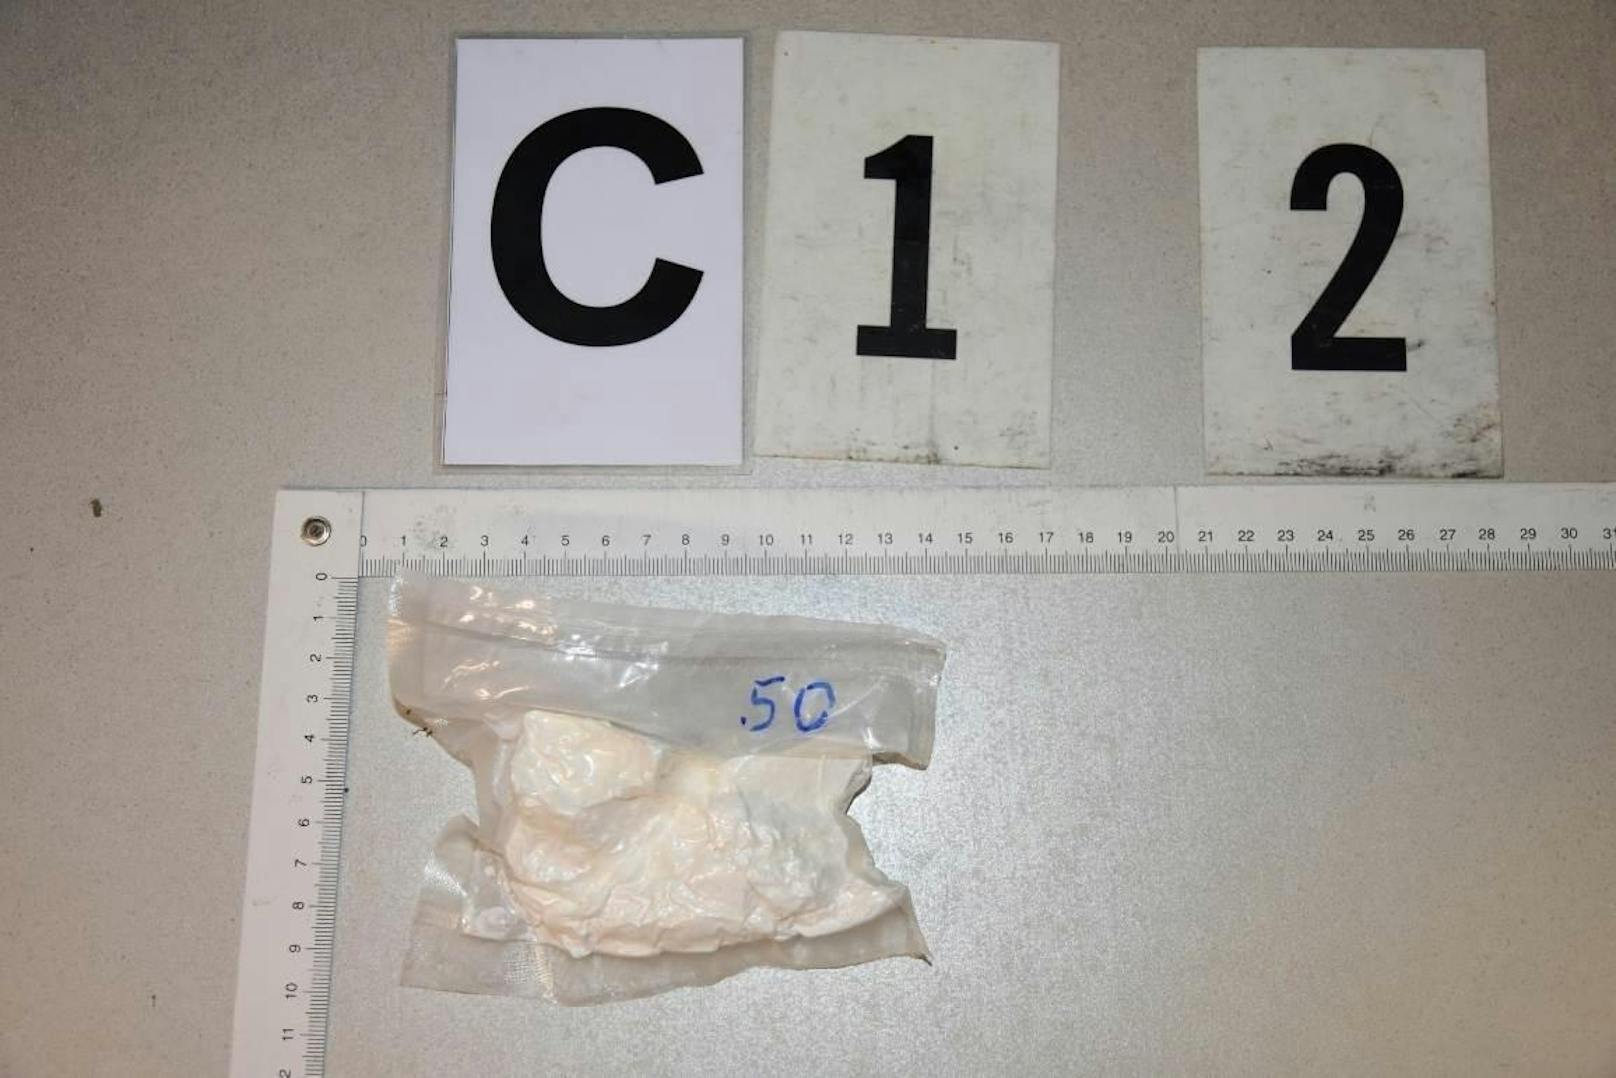 In der Wohnung des Verdächtigen wurden geringe Mengen Kokain sichergestellt. (Symbolbild)